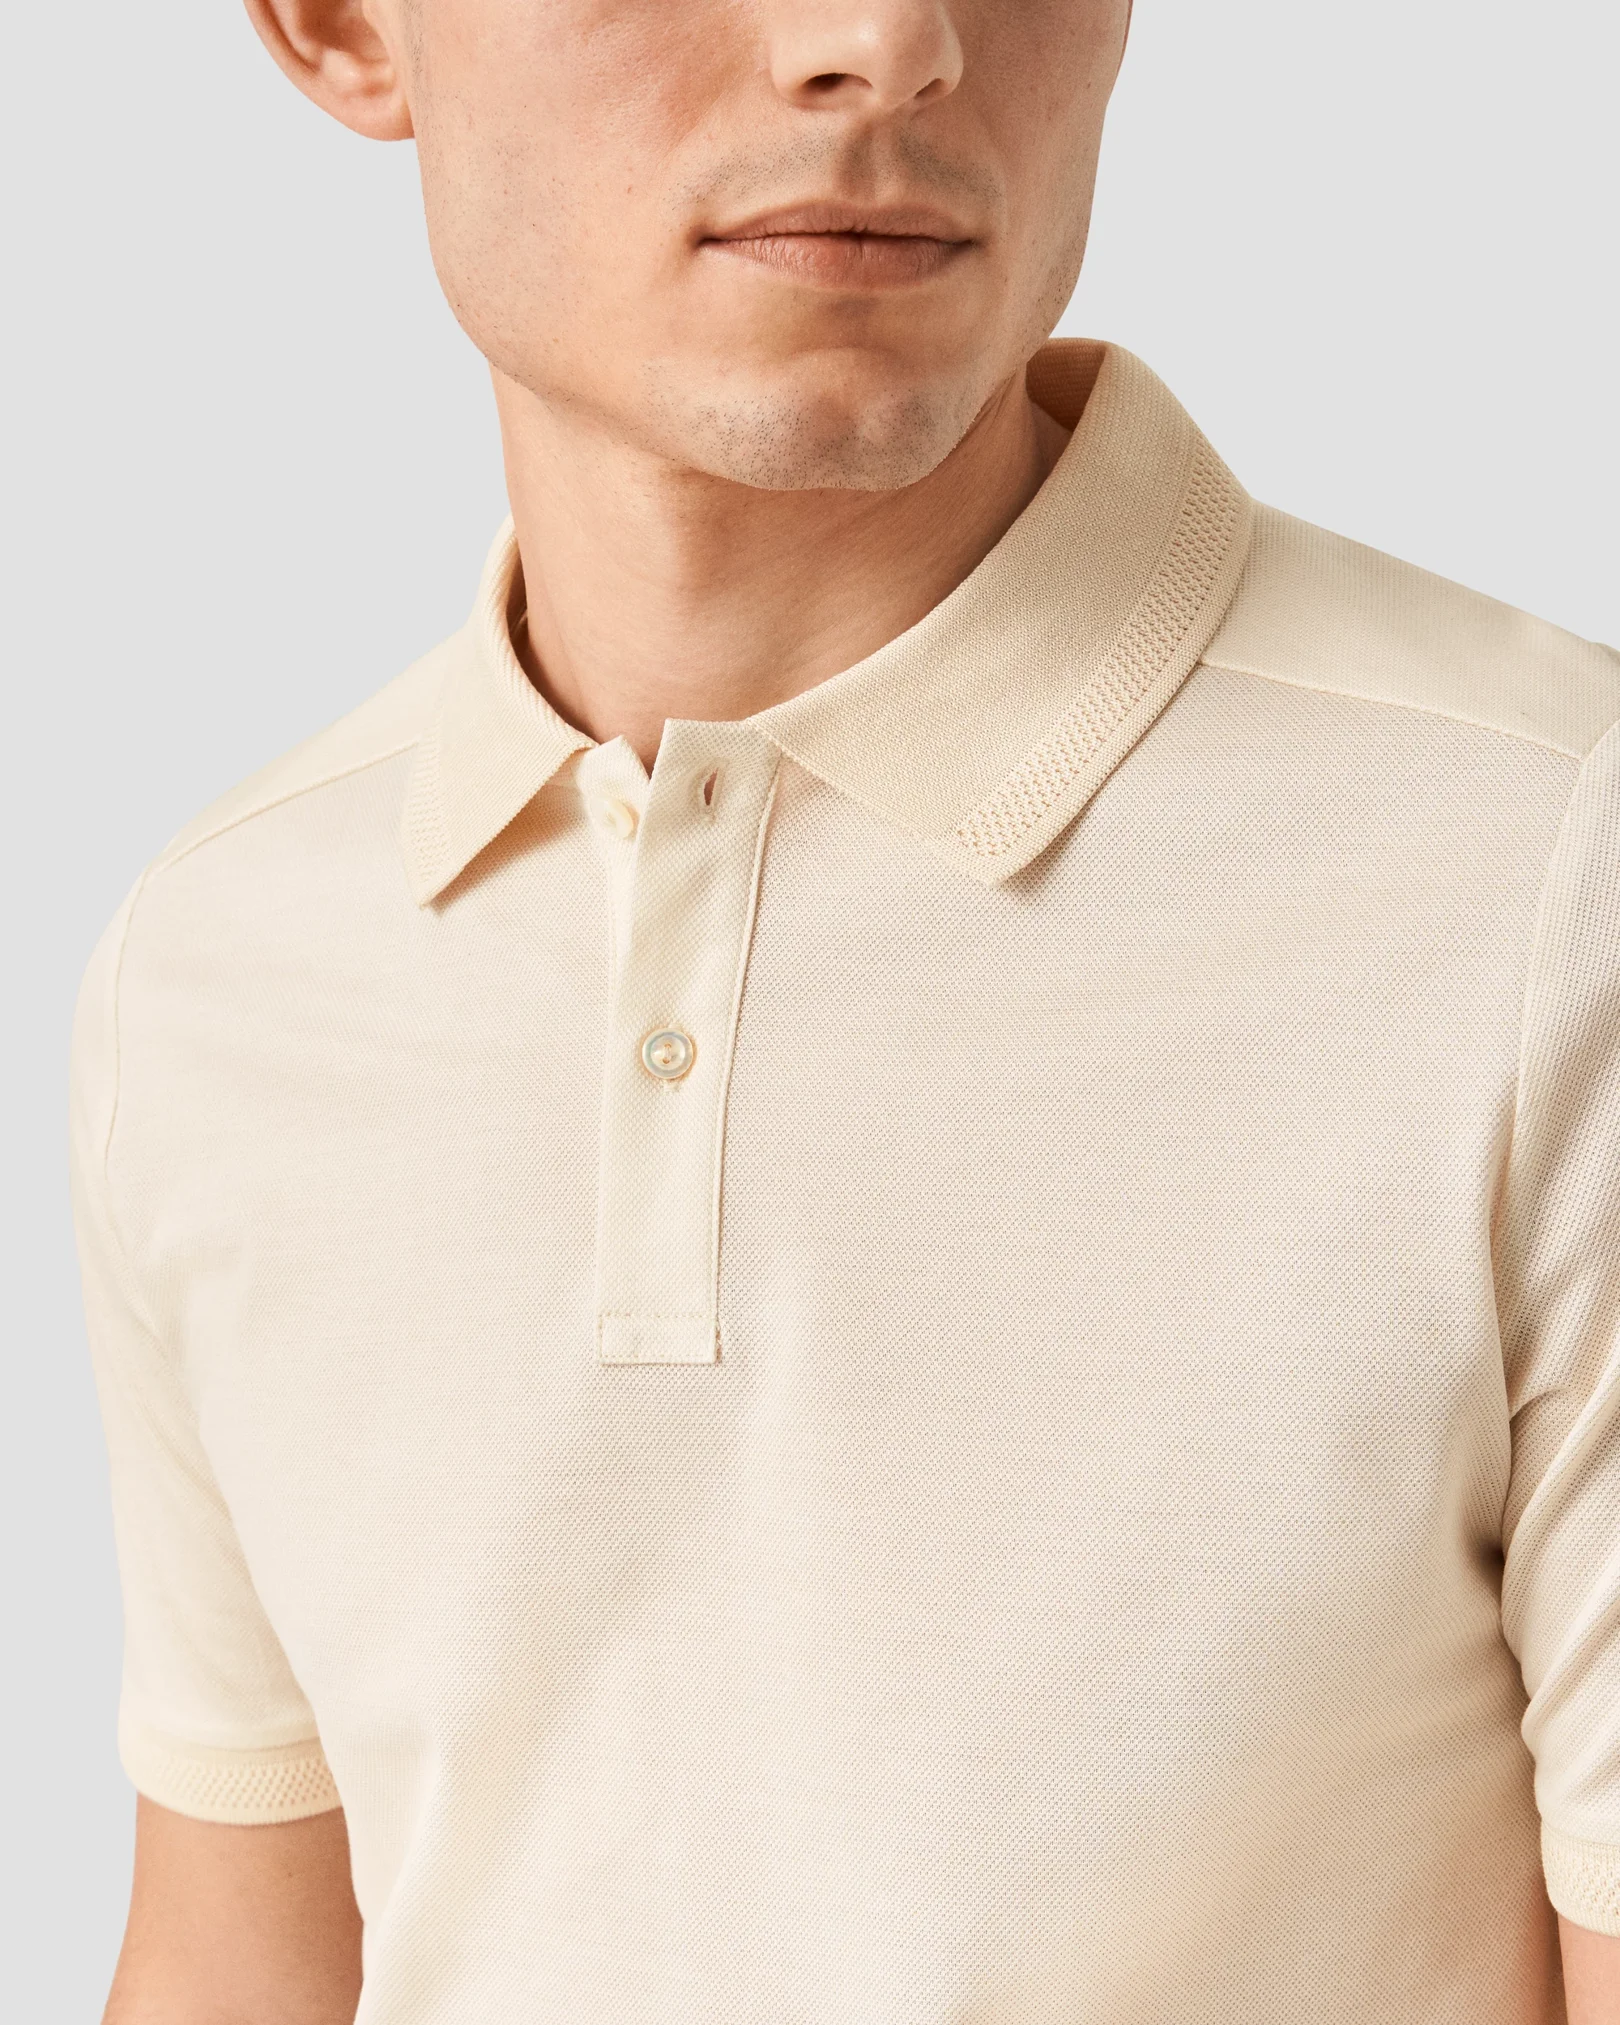 Eton - off white knitted collar short sleeve regular fit